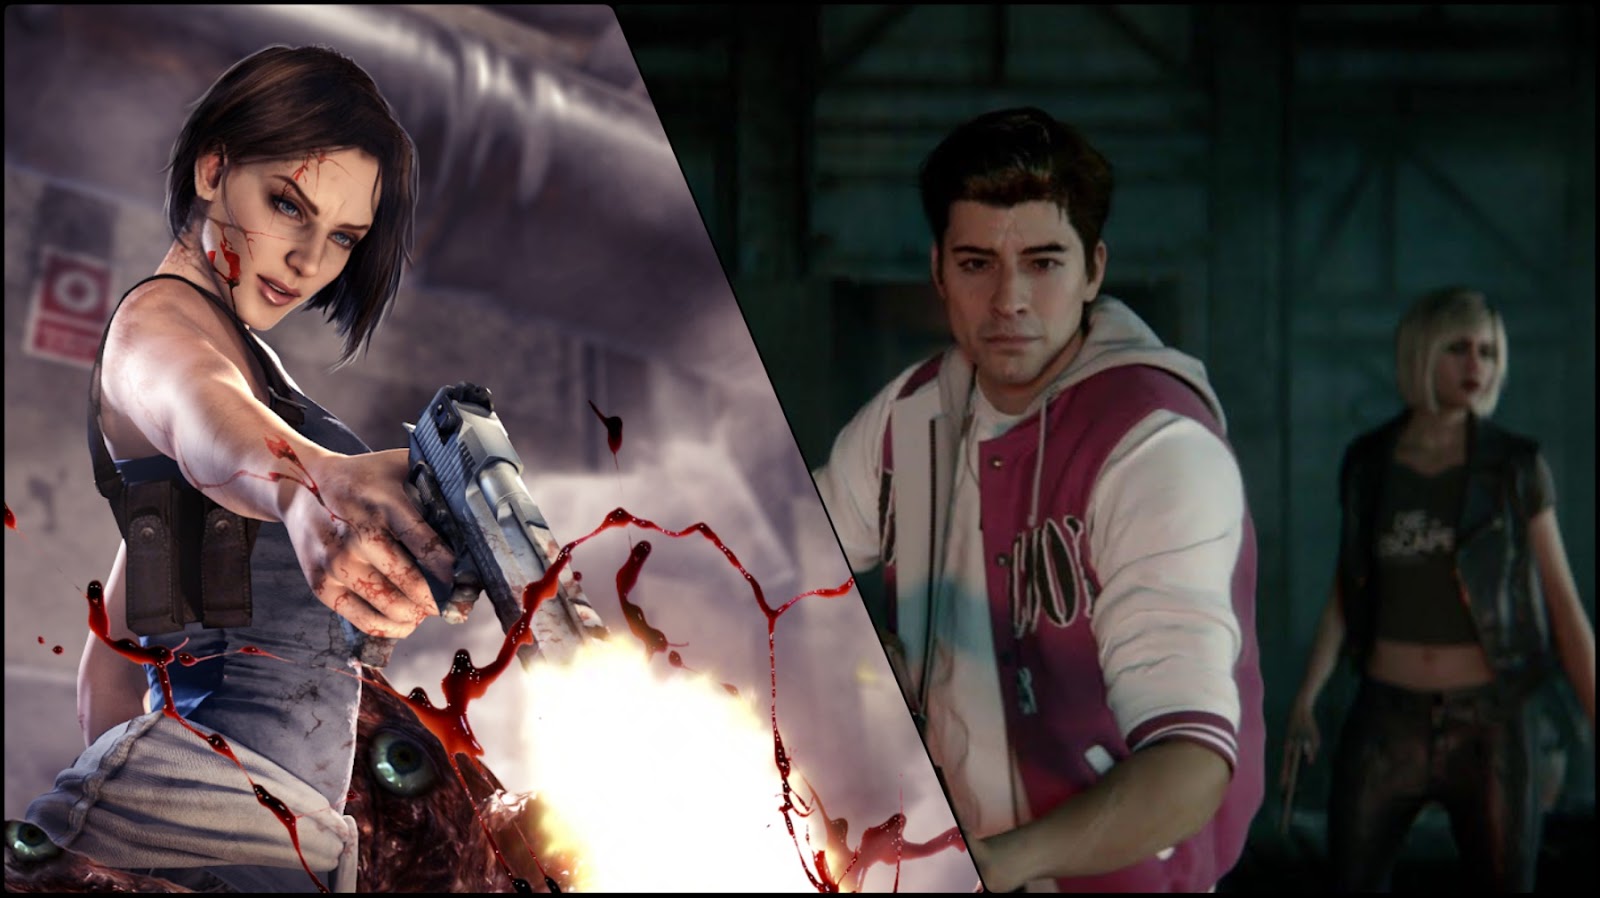 Resident Evil: Death Island tem opção de dublagem em português brasileiro  no exterior